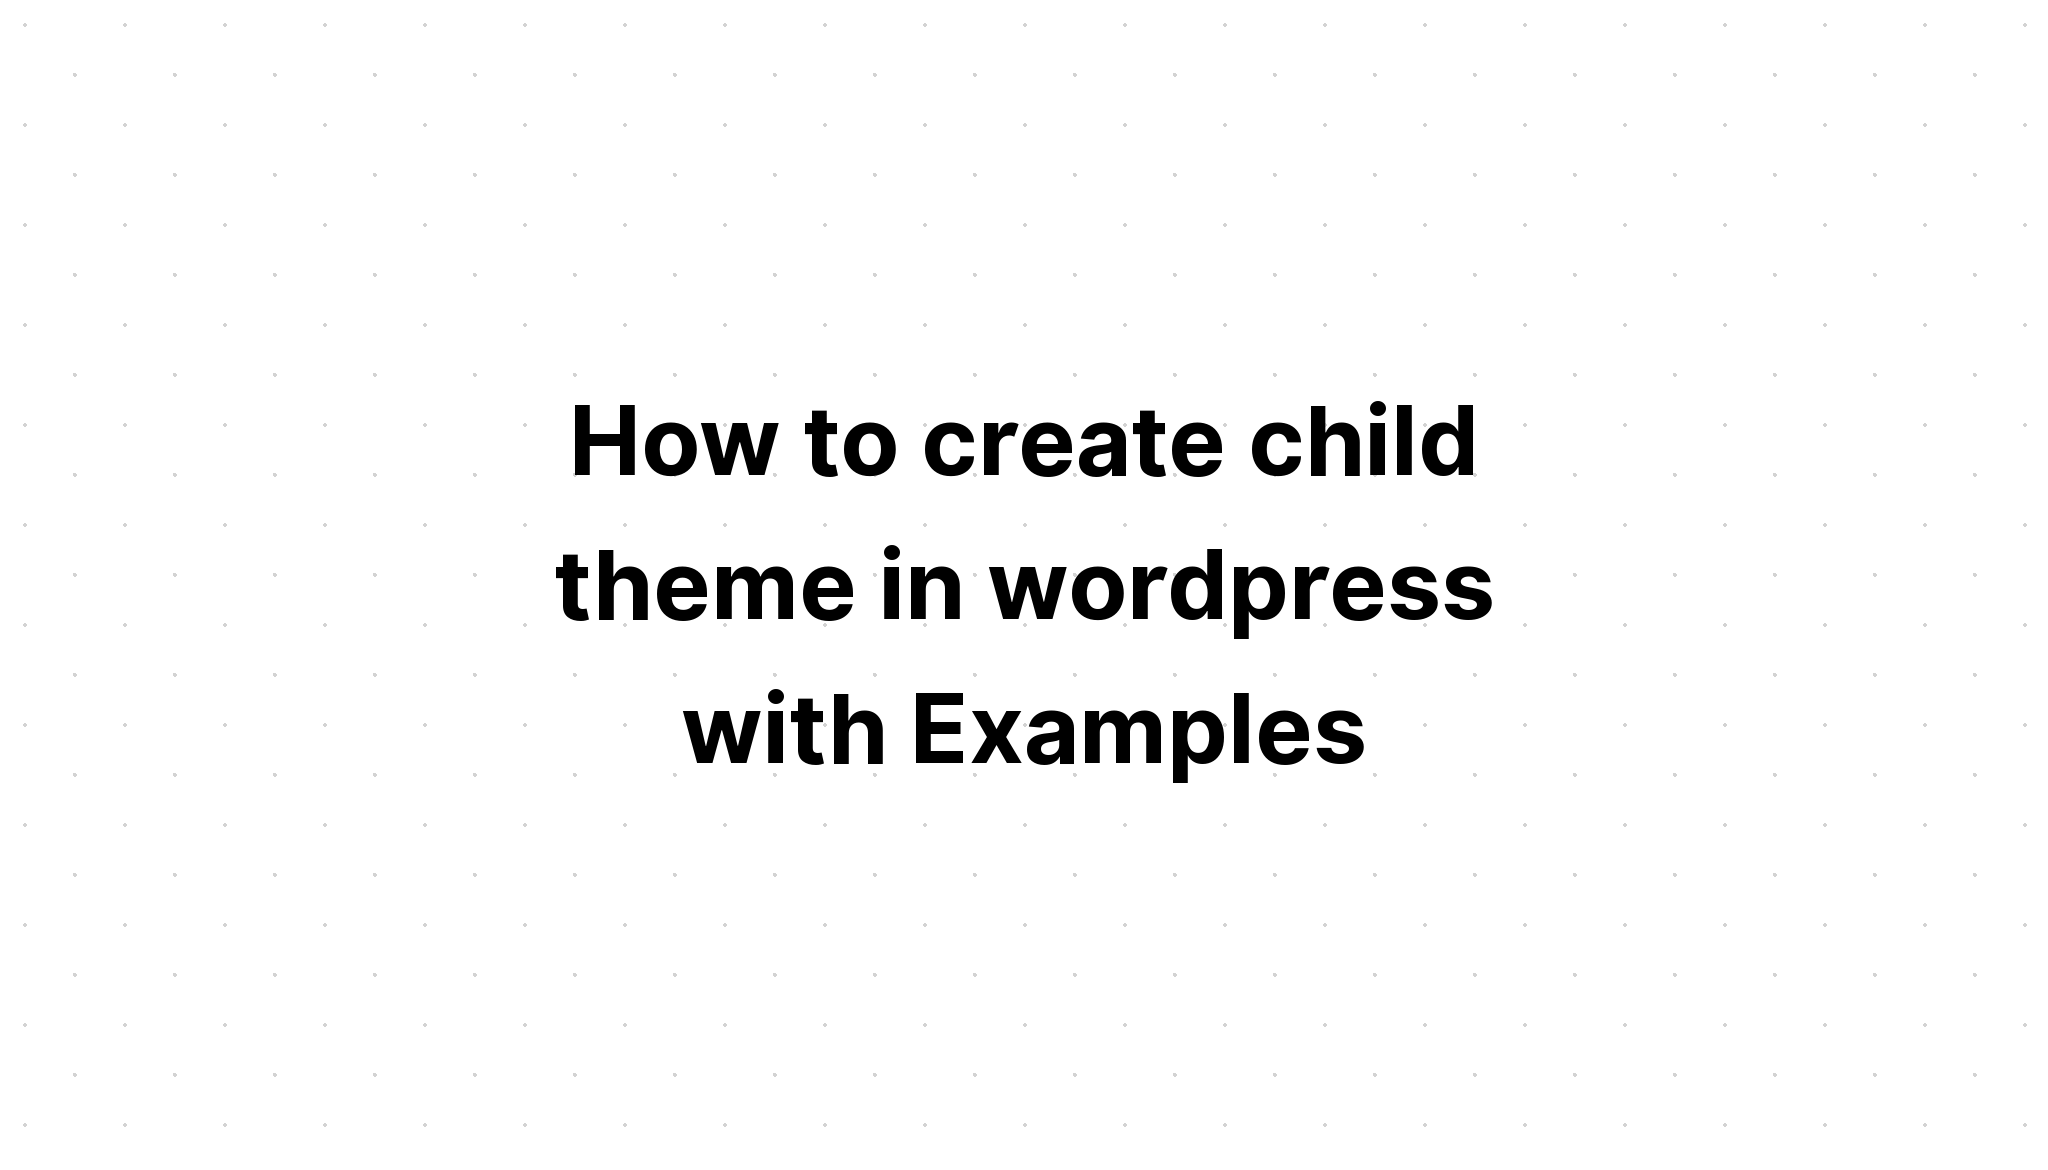 Cara membuat child theme di wordpress dengan Contoh